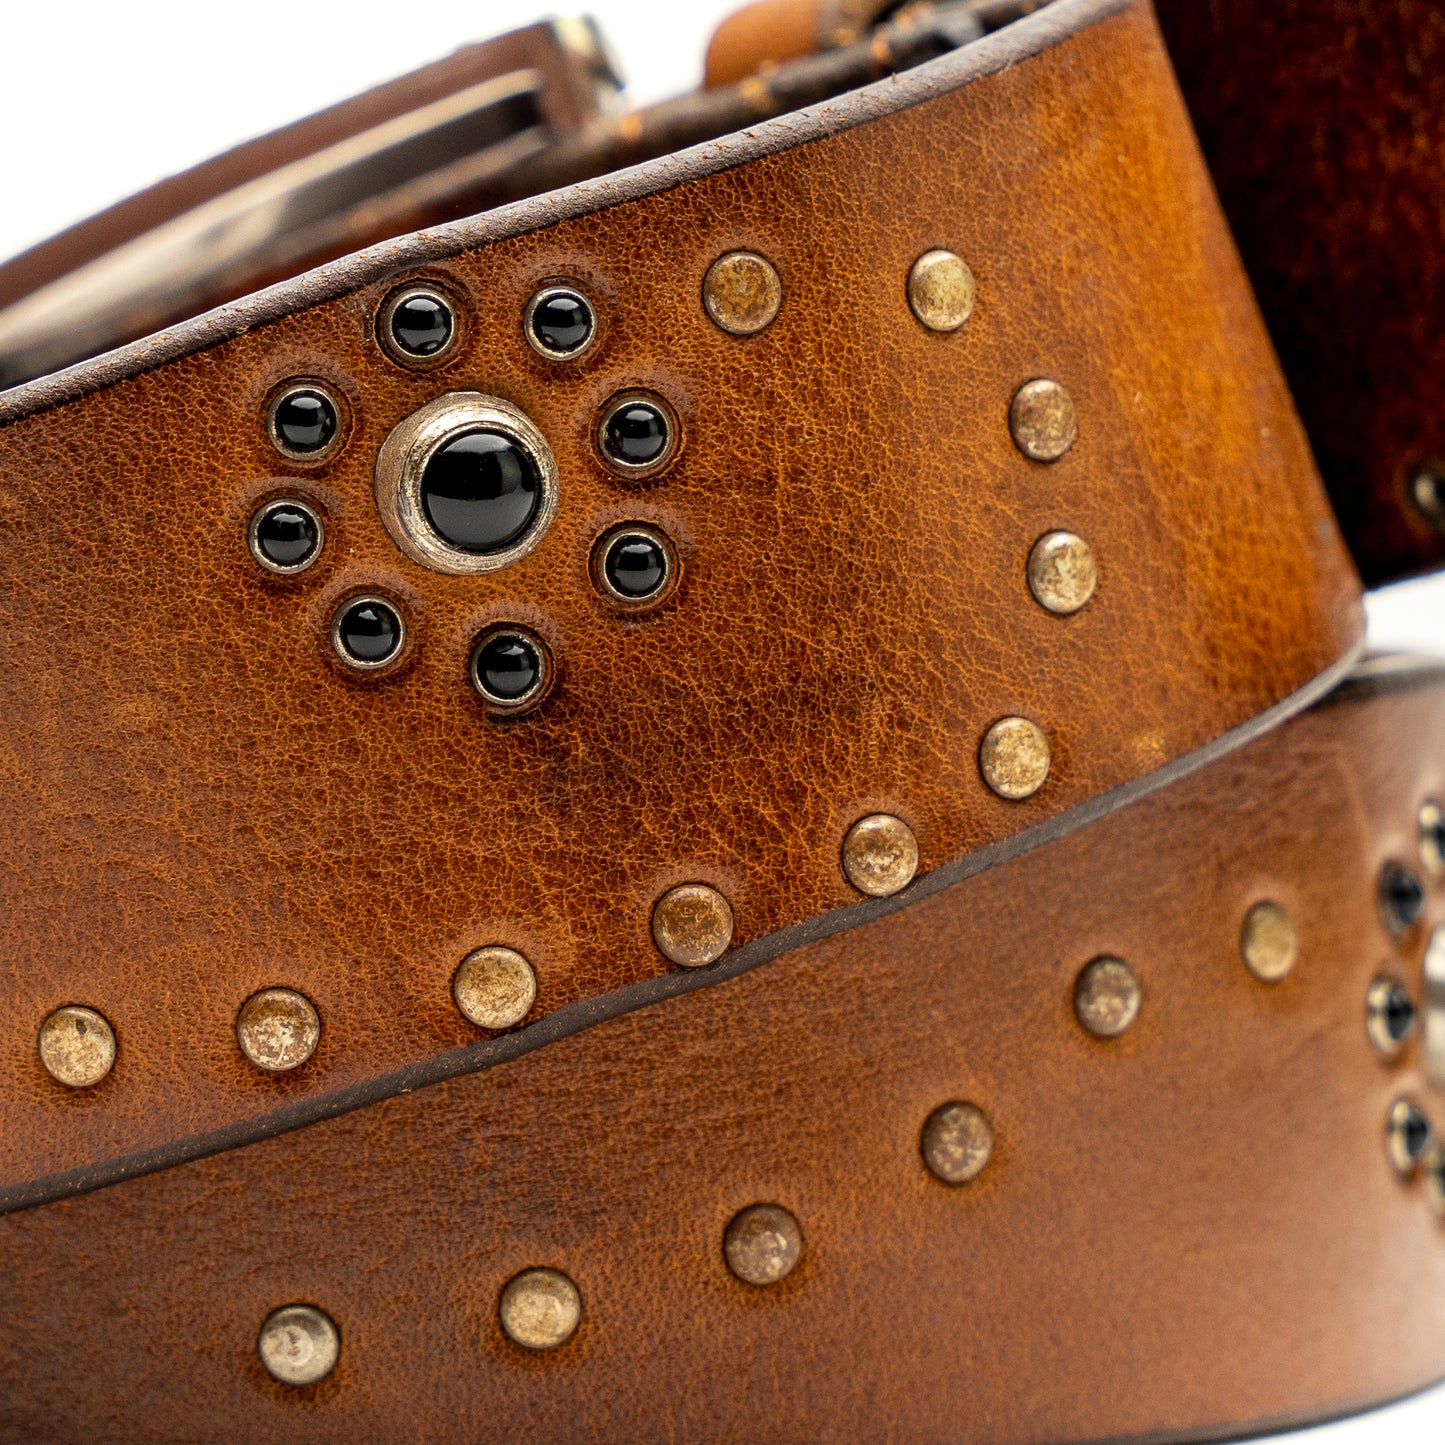 Light Brown Vintage Leather Belt